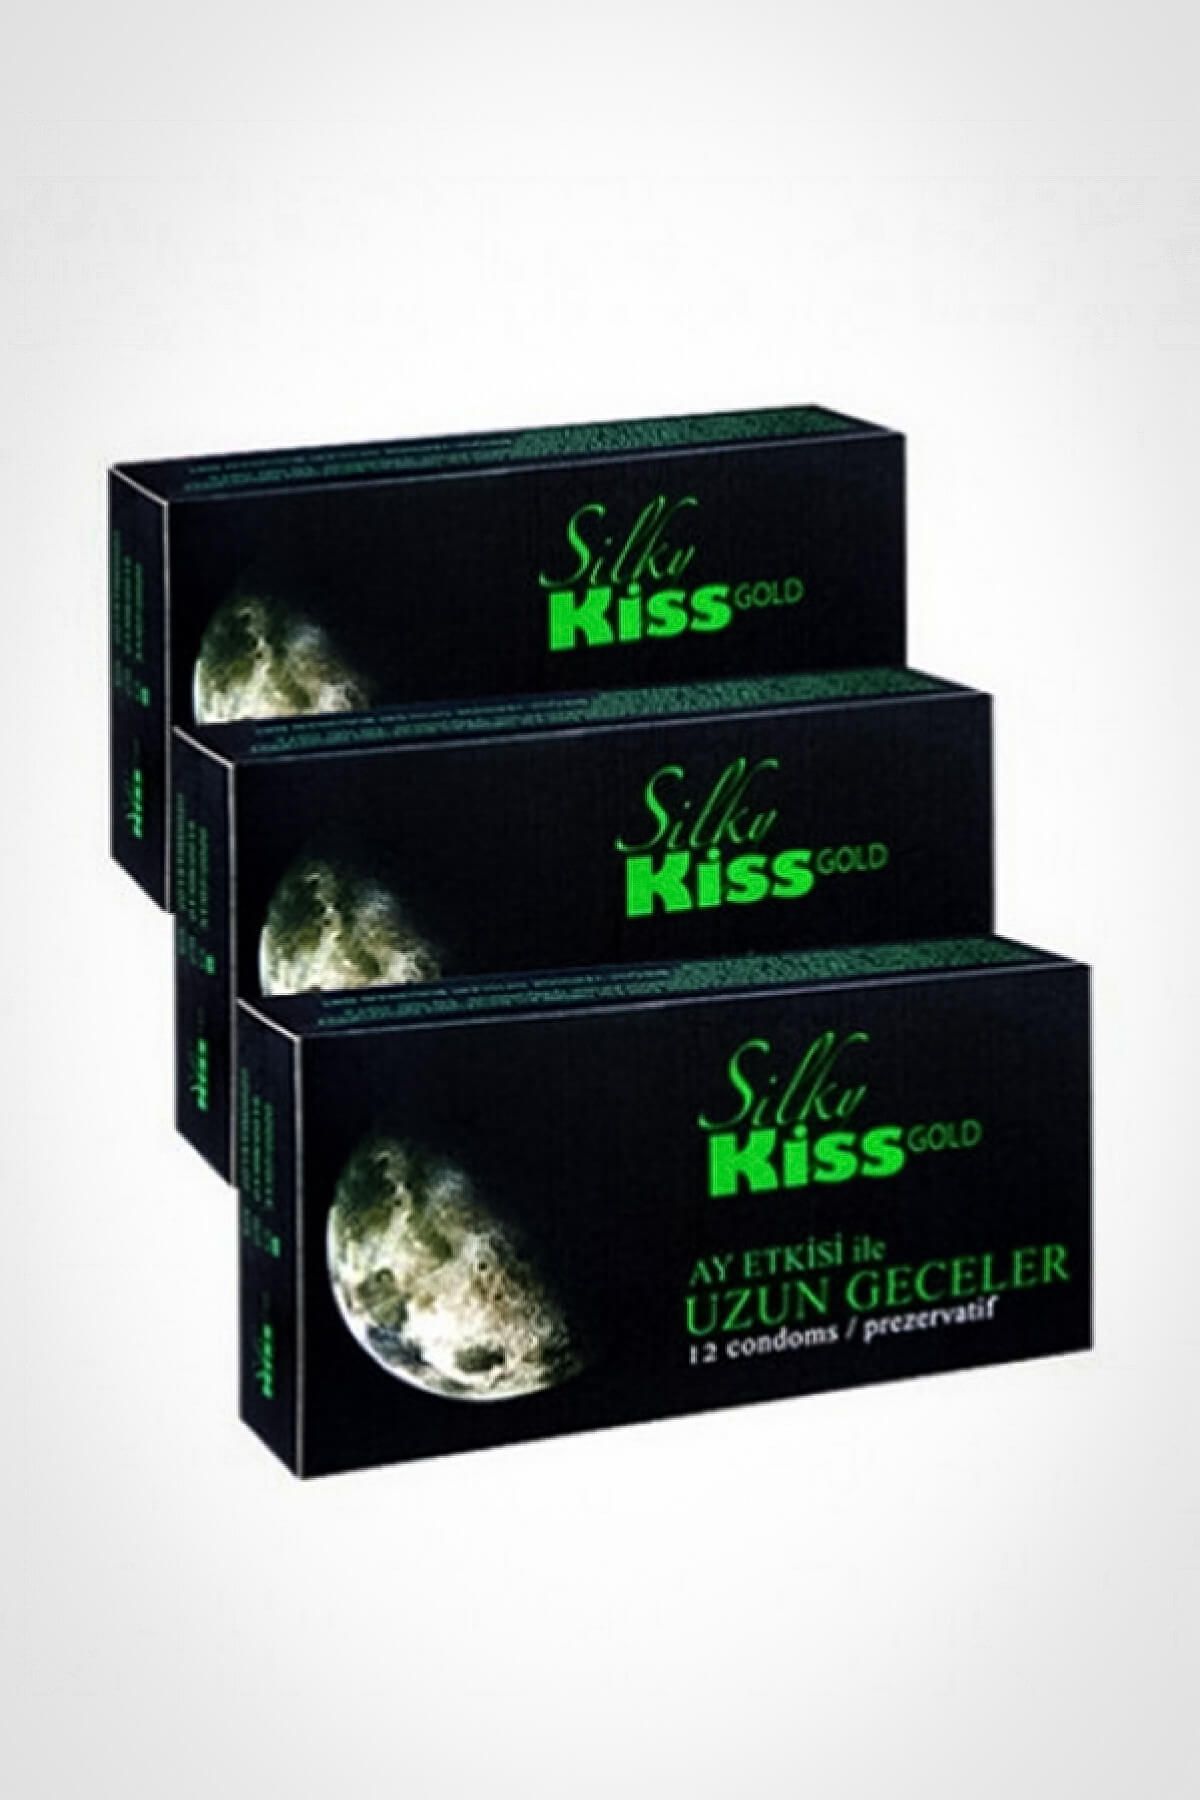 Silky Kiss Silk Kiss Prezervatif gold Uzun geceler (36 Adet)